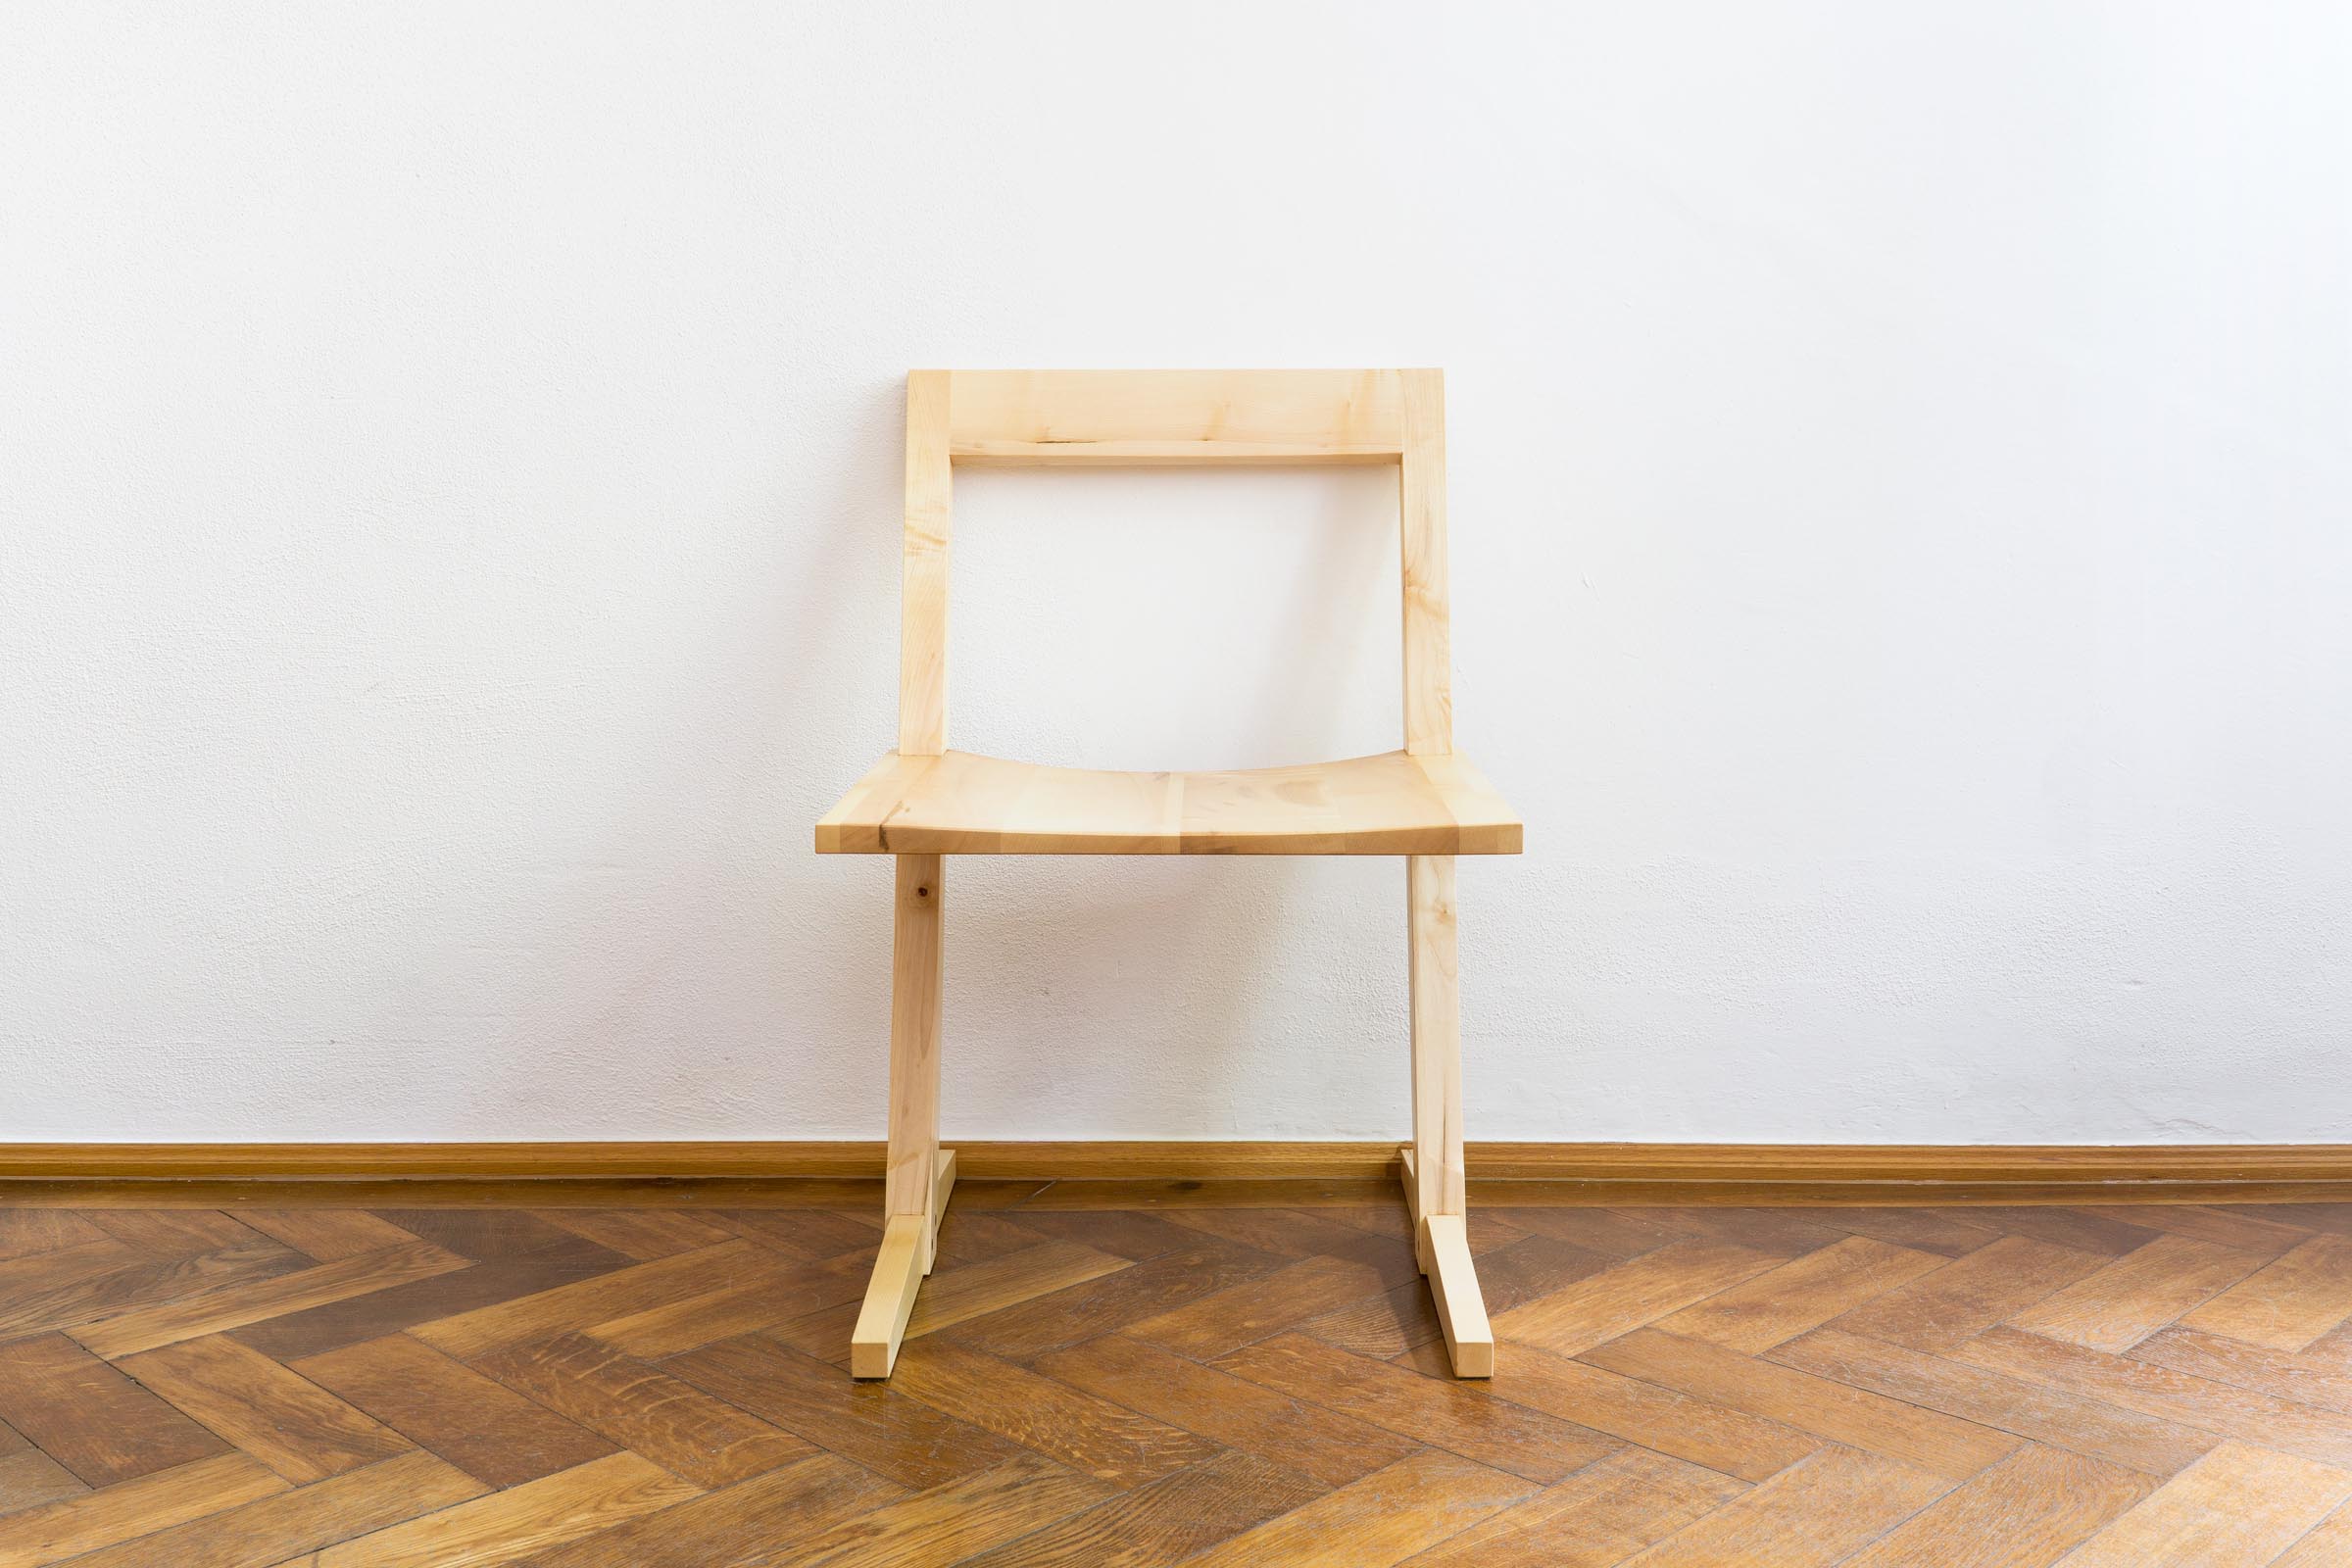 Stuhl aus Massivholz Ahorn handgefertigt als Einzelmöbelstück von The Trees of Life in Perg in Oberösterreich